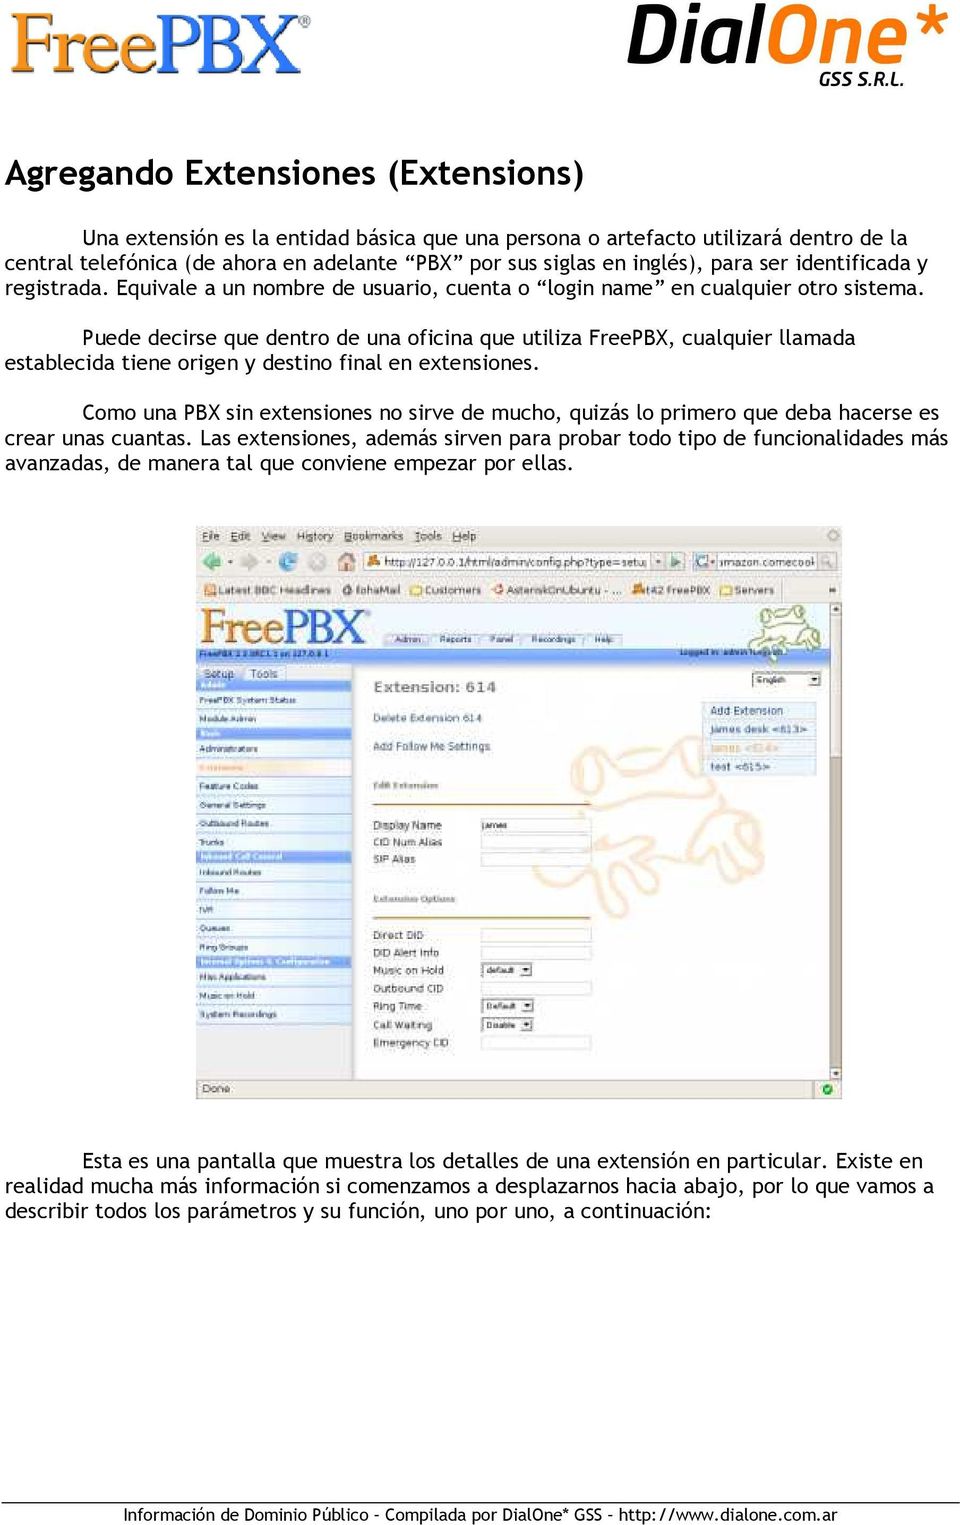 Puede decirse que dentro de una oficina que utiliza FreePBX, cualquier llamada establecida tiene origen y destino final en extensiones.